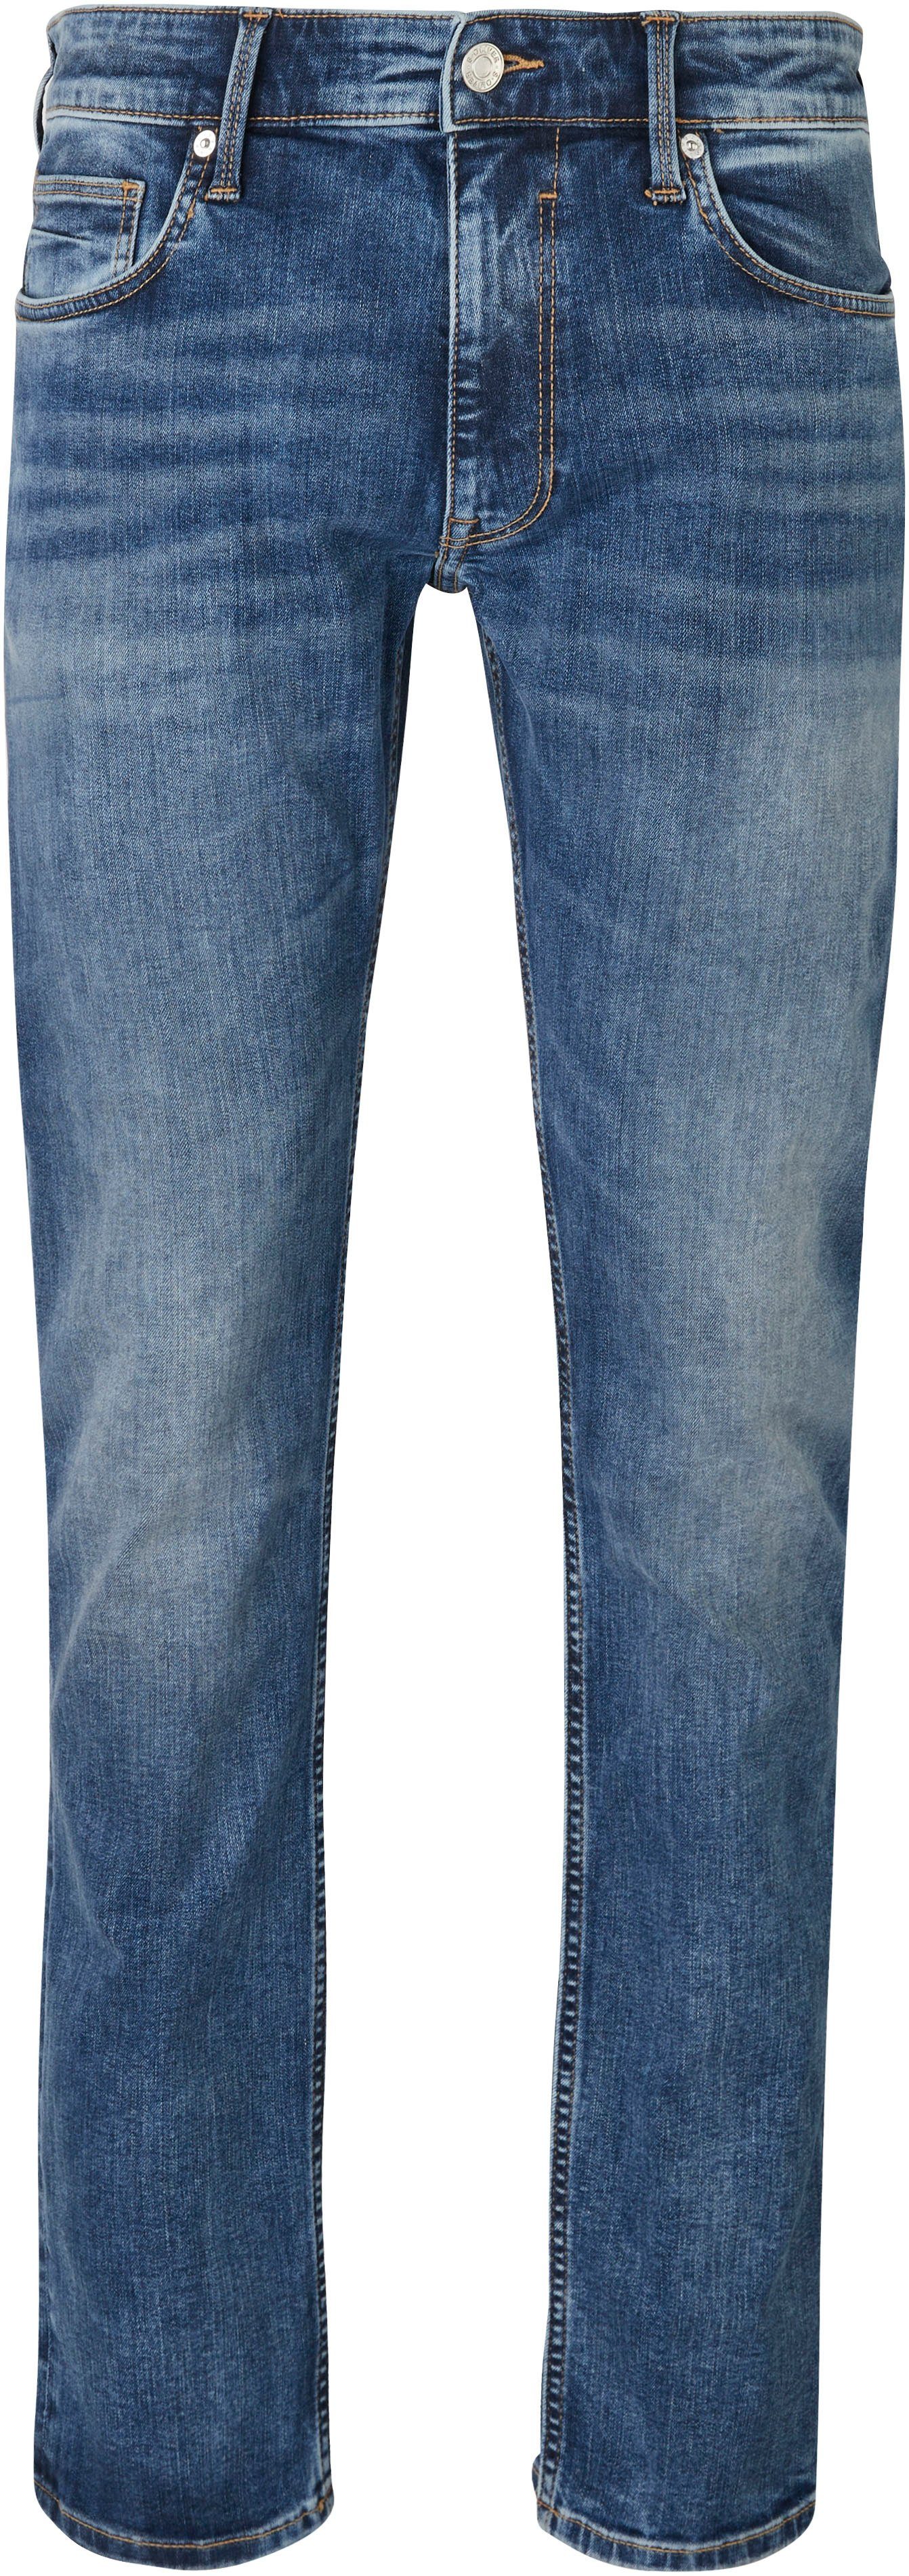 Eingrifftaschen Jeans 34 blue Gesäß- s.Oliver mit mid und Bequeme